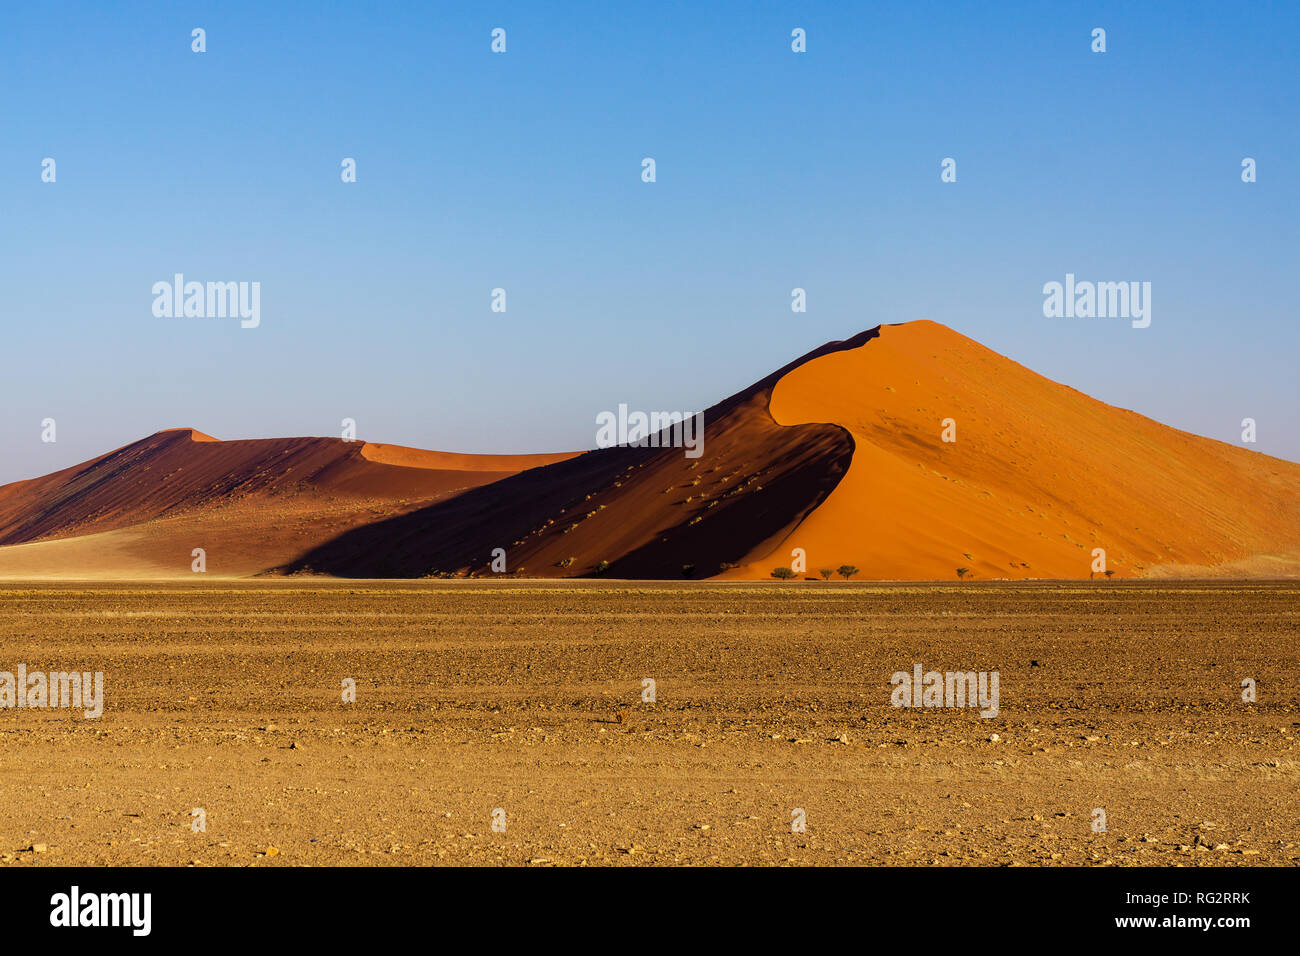 El parque Namib-Naukluft al atardecer. Borde afilado de la luz y de la sombra sobre la cresta de la duna. E l concepto de extrema y un turismo de aventura exótica Foto de stock